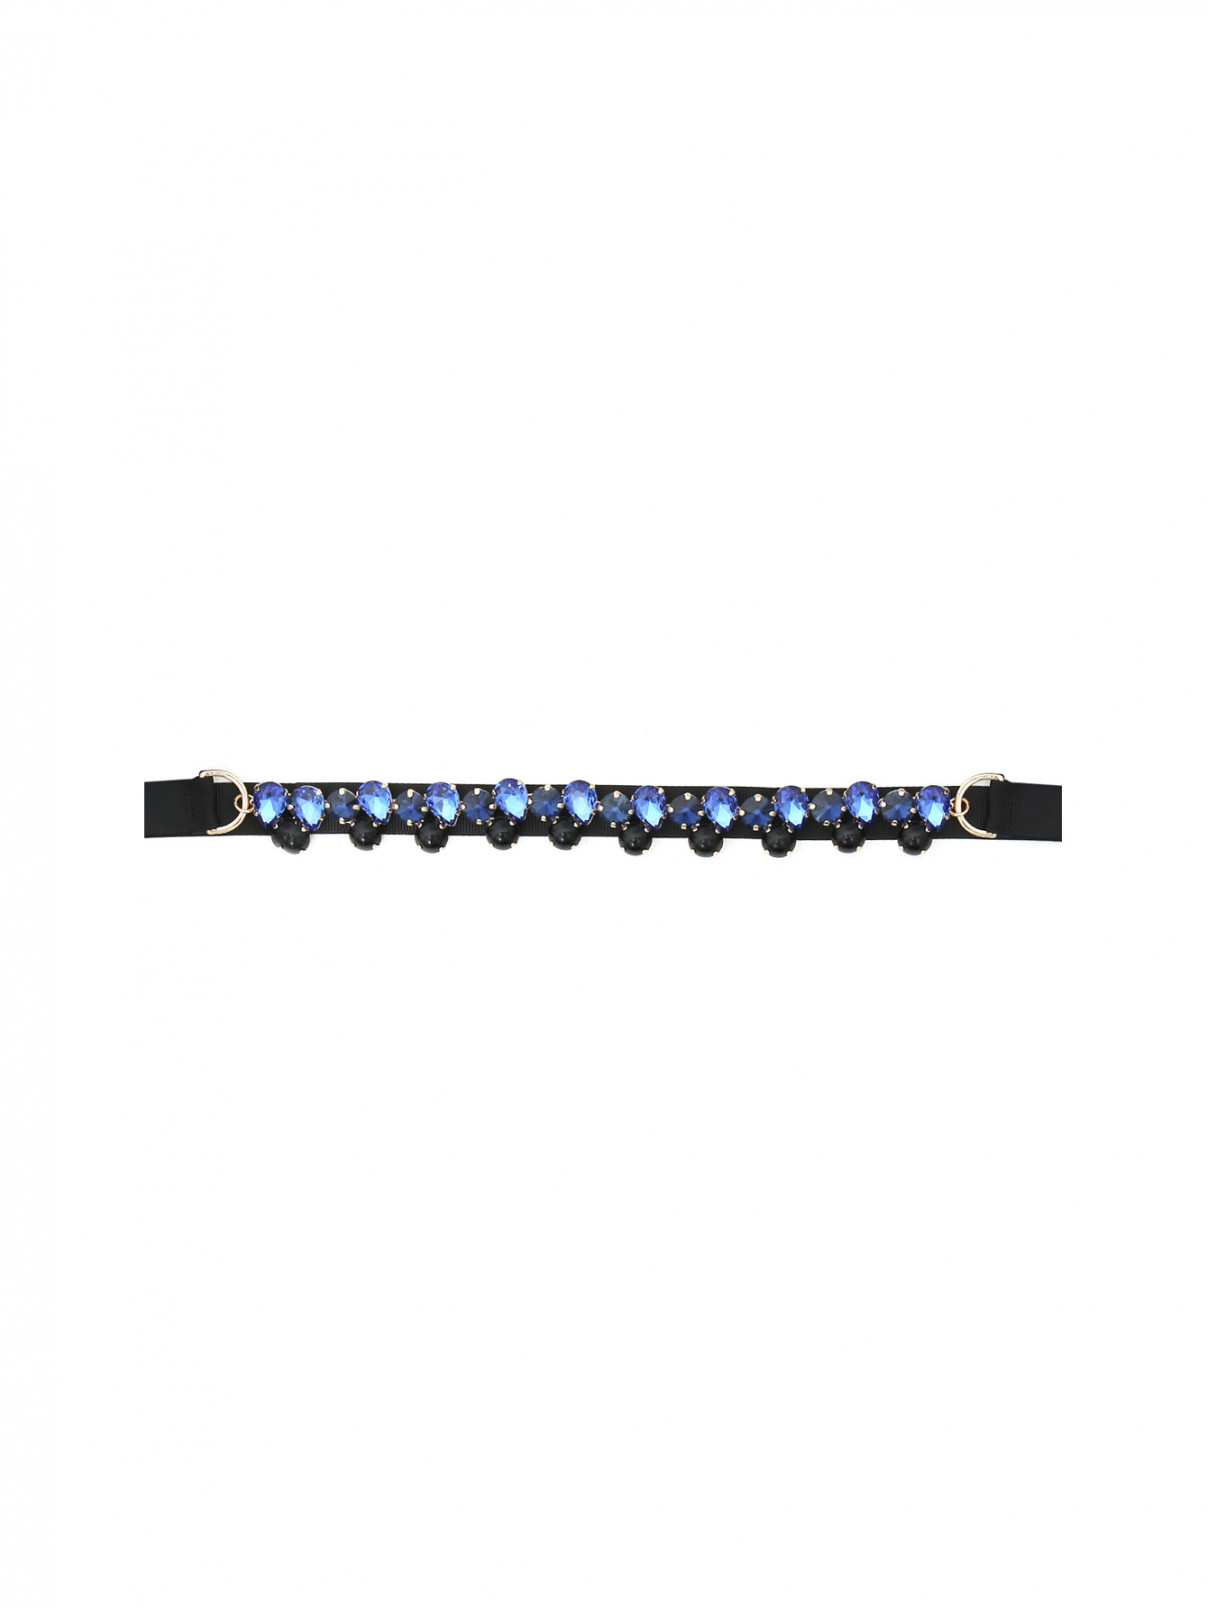 Пояс из металла и текстиля декорированный кристаллами Max&Co  –  Общий вид  – Цвет:  Синий